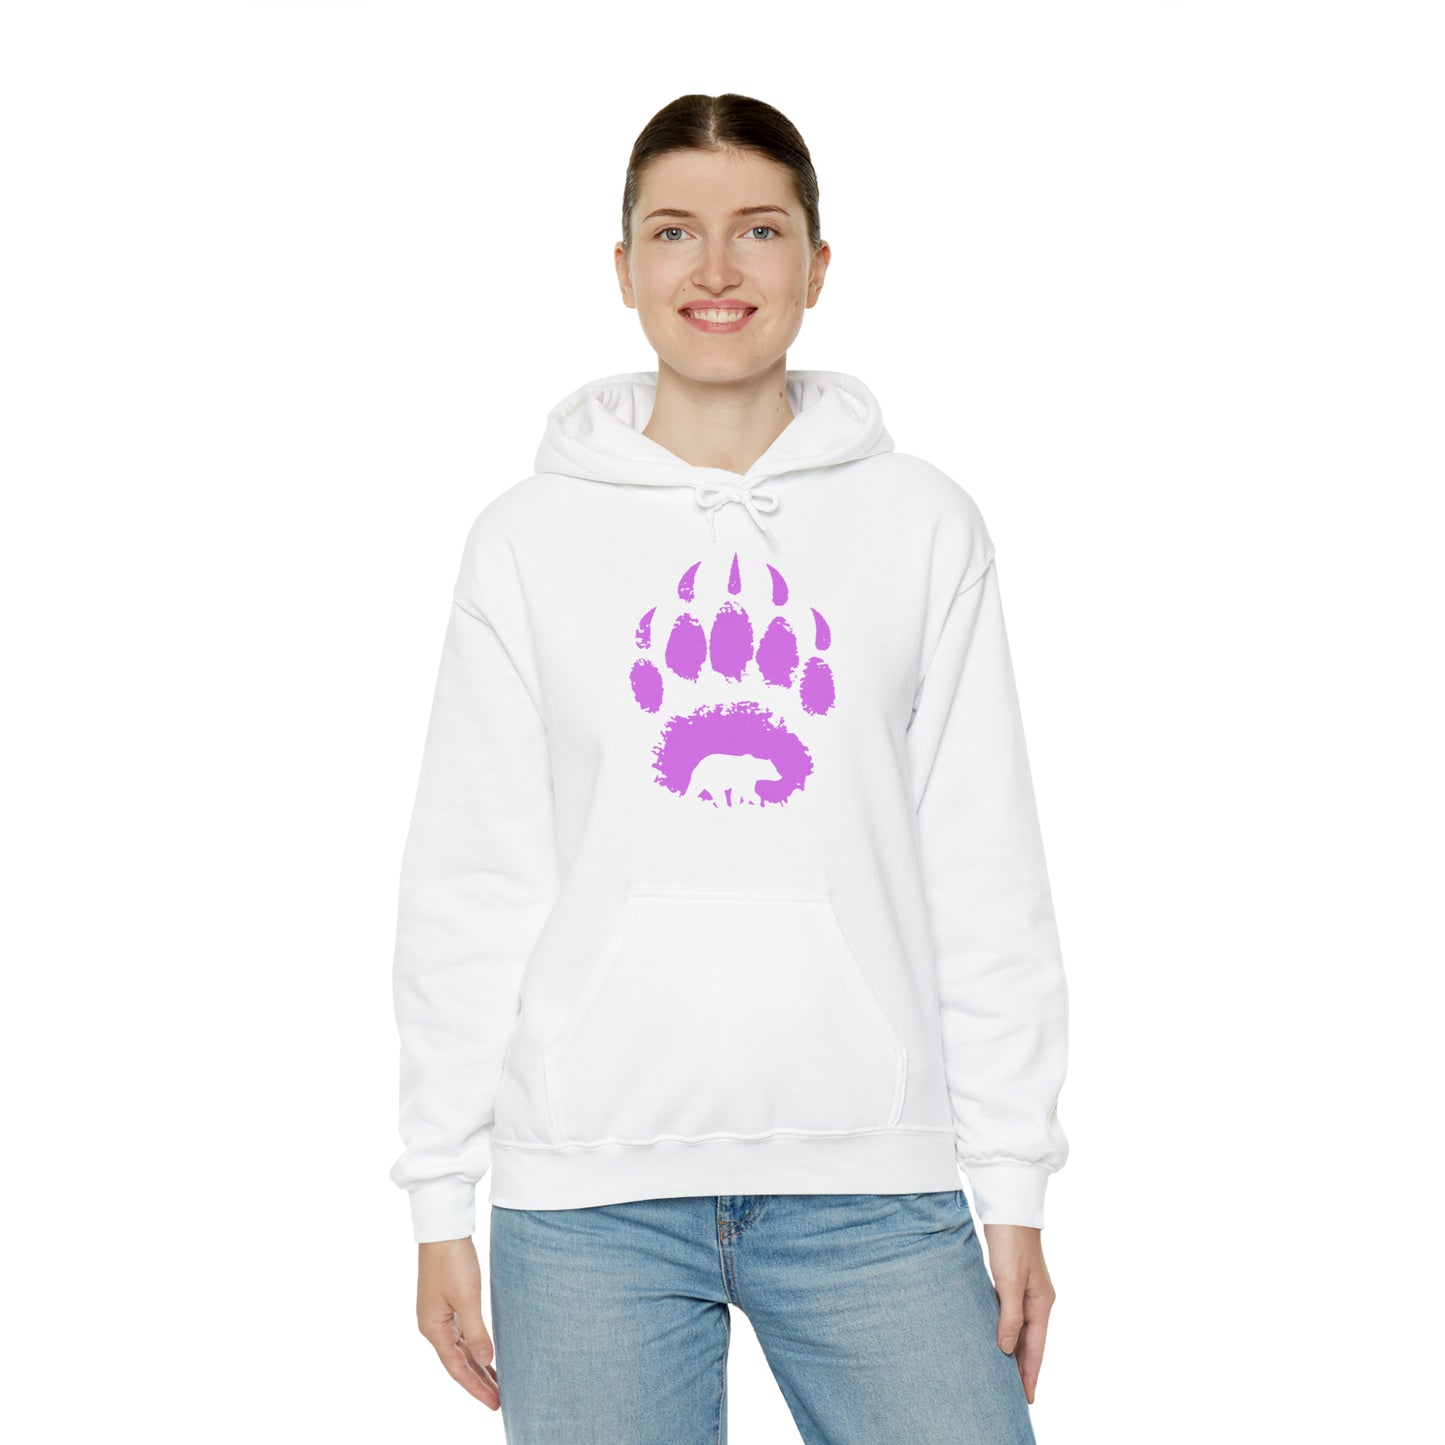 Bear paw purple - Unisex Heavy Blend™ Hooded Sweatshirt